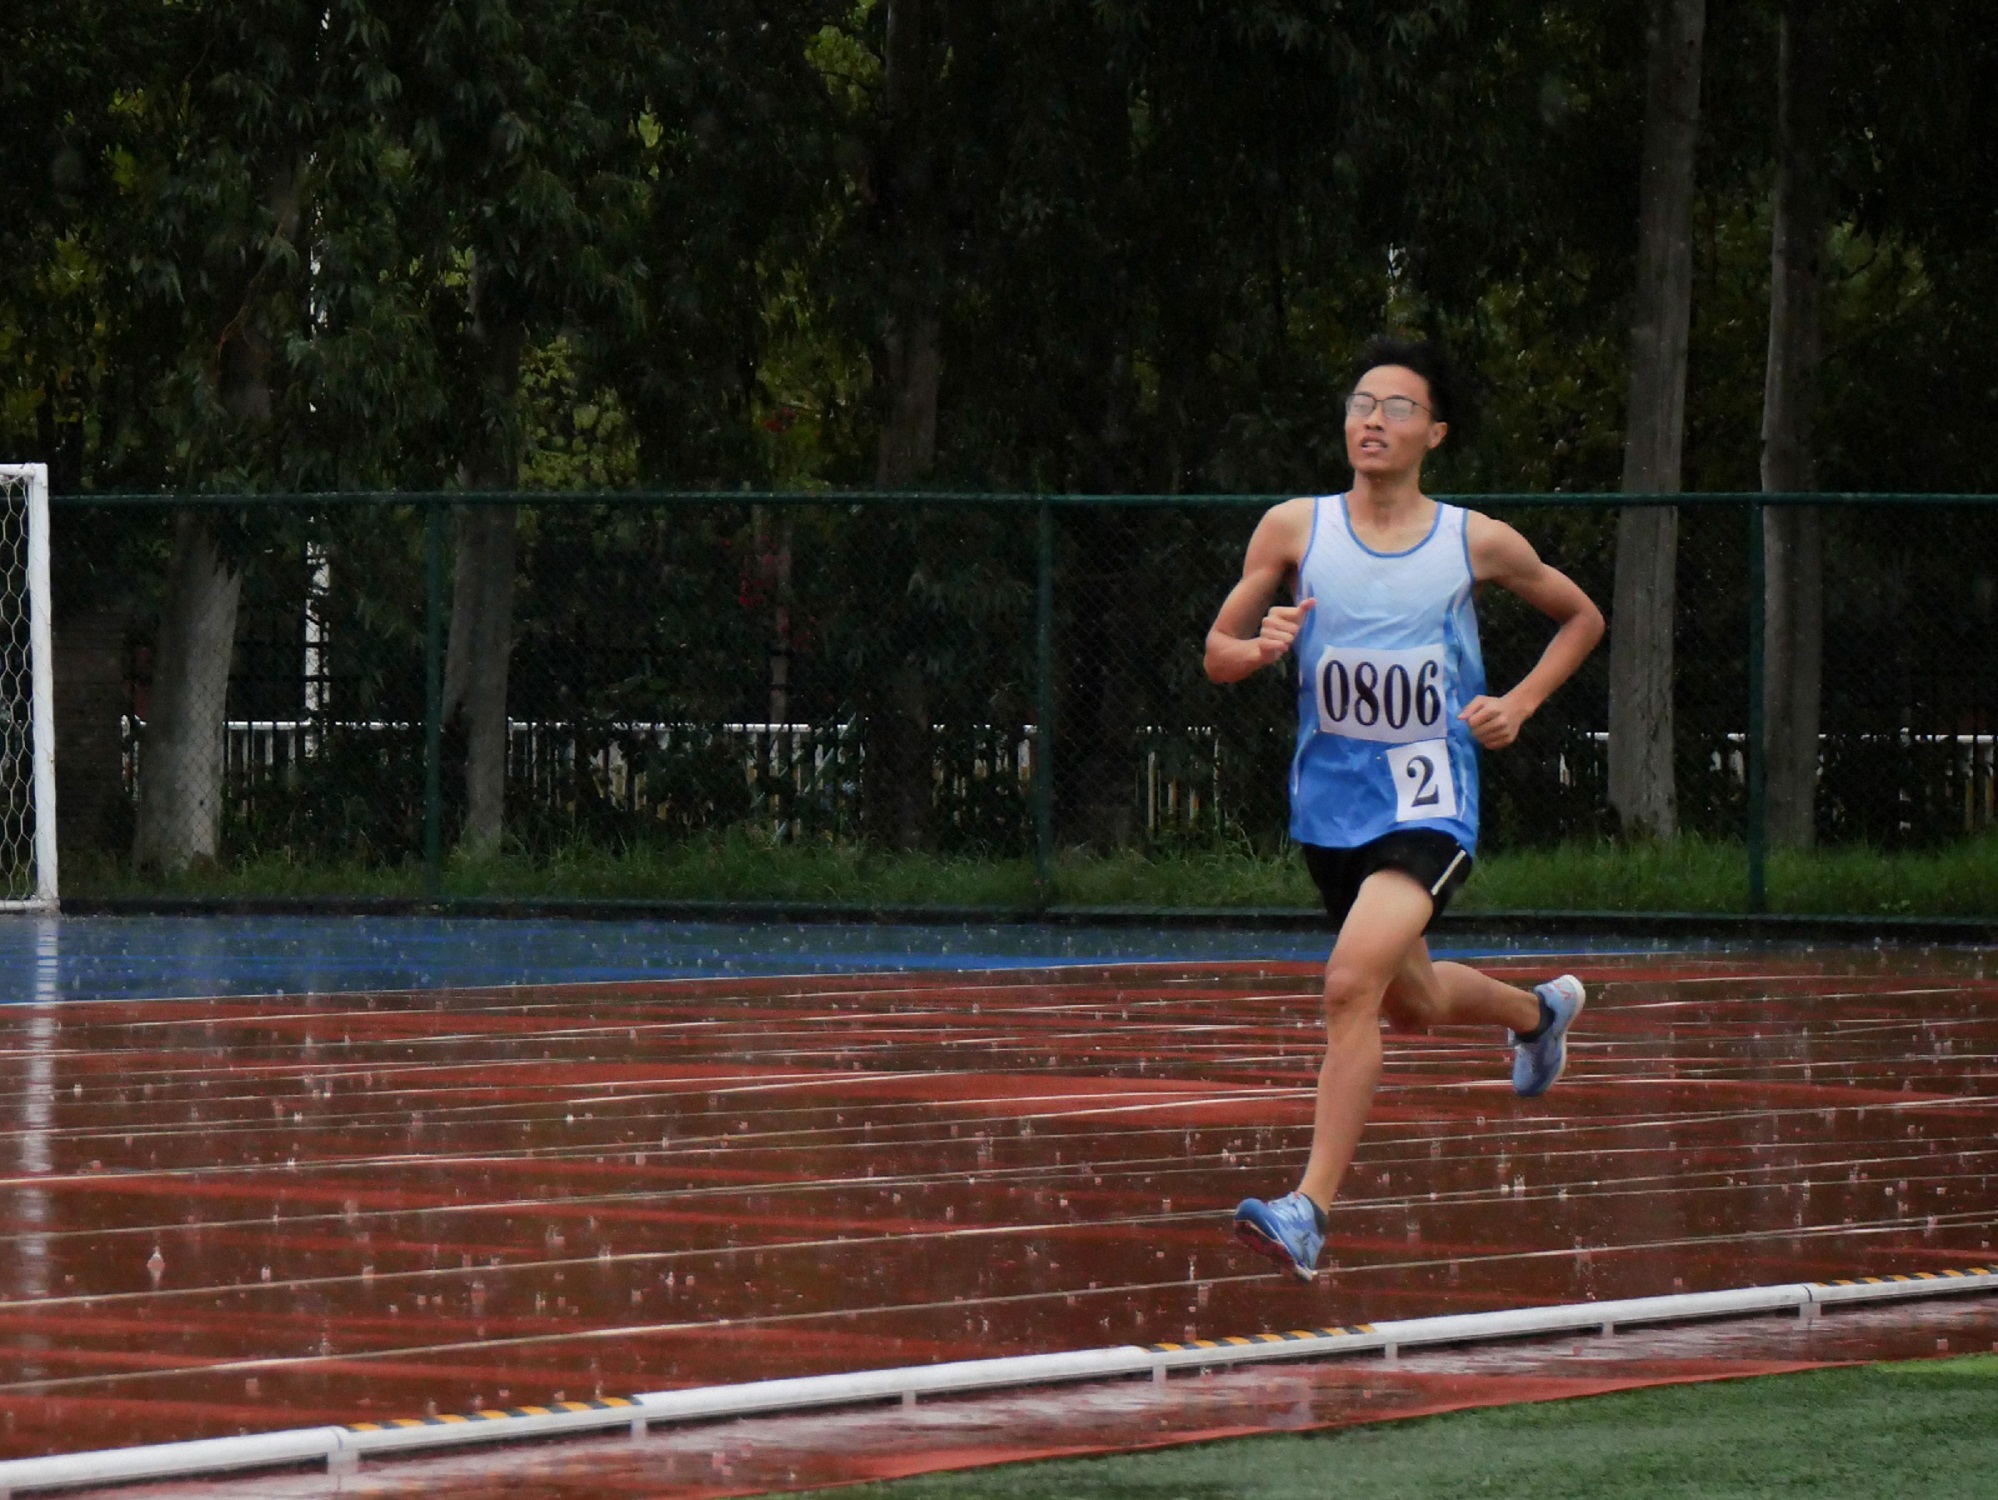 运动员在雨中跑步 杨林杉摄jpg